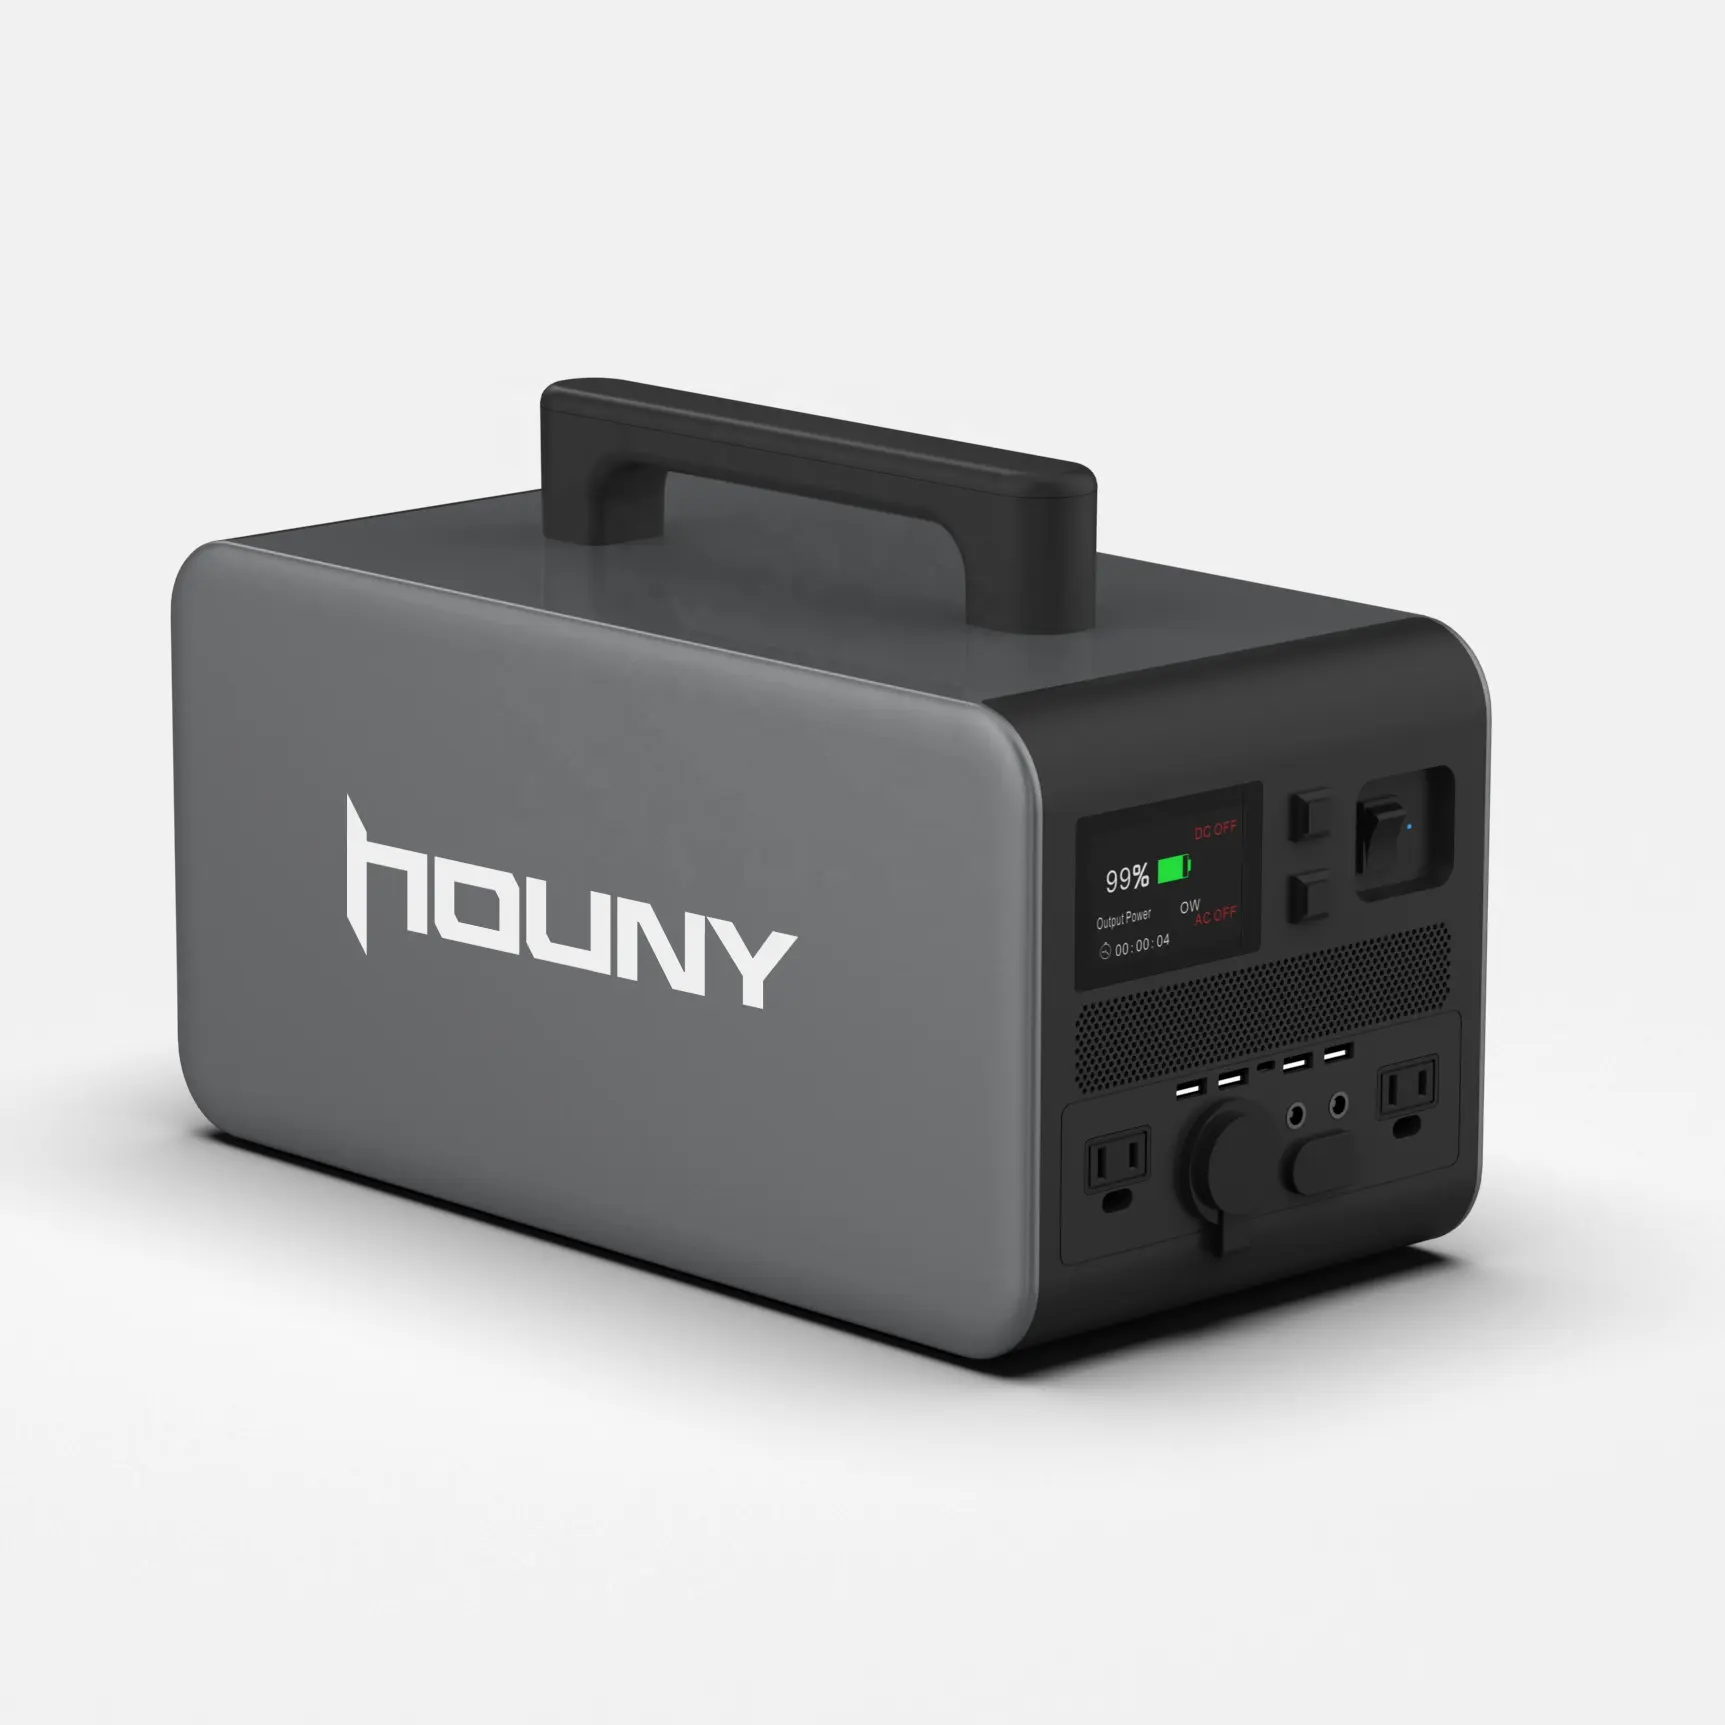 Houny 2019 New到着1080Wh Power Stationポータブル電源屋外で使用する